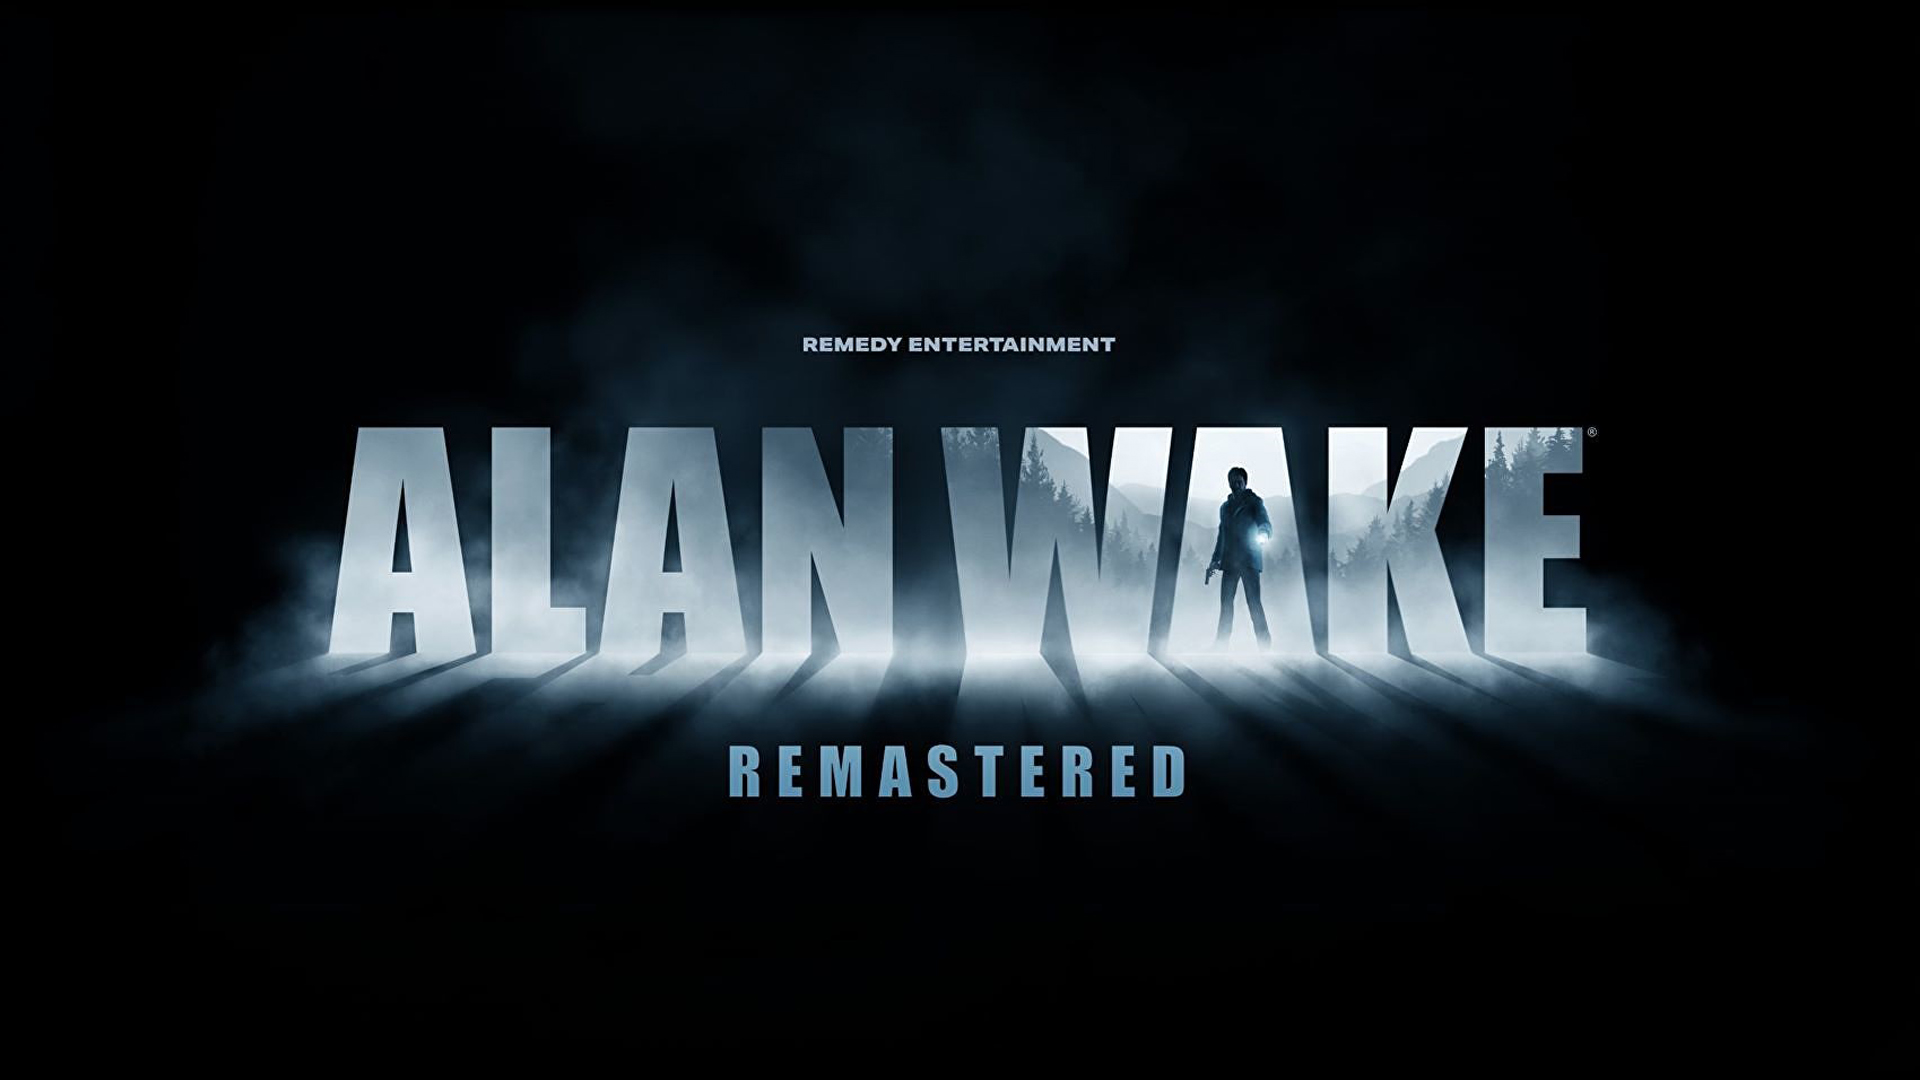 Alan Wake (PC) - Buy Steam Game Key